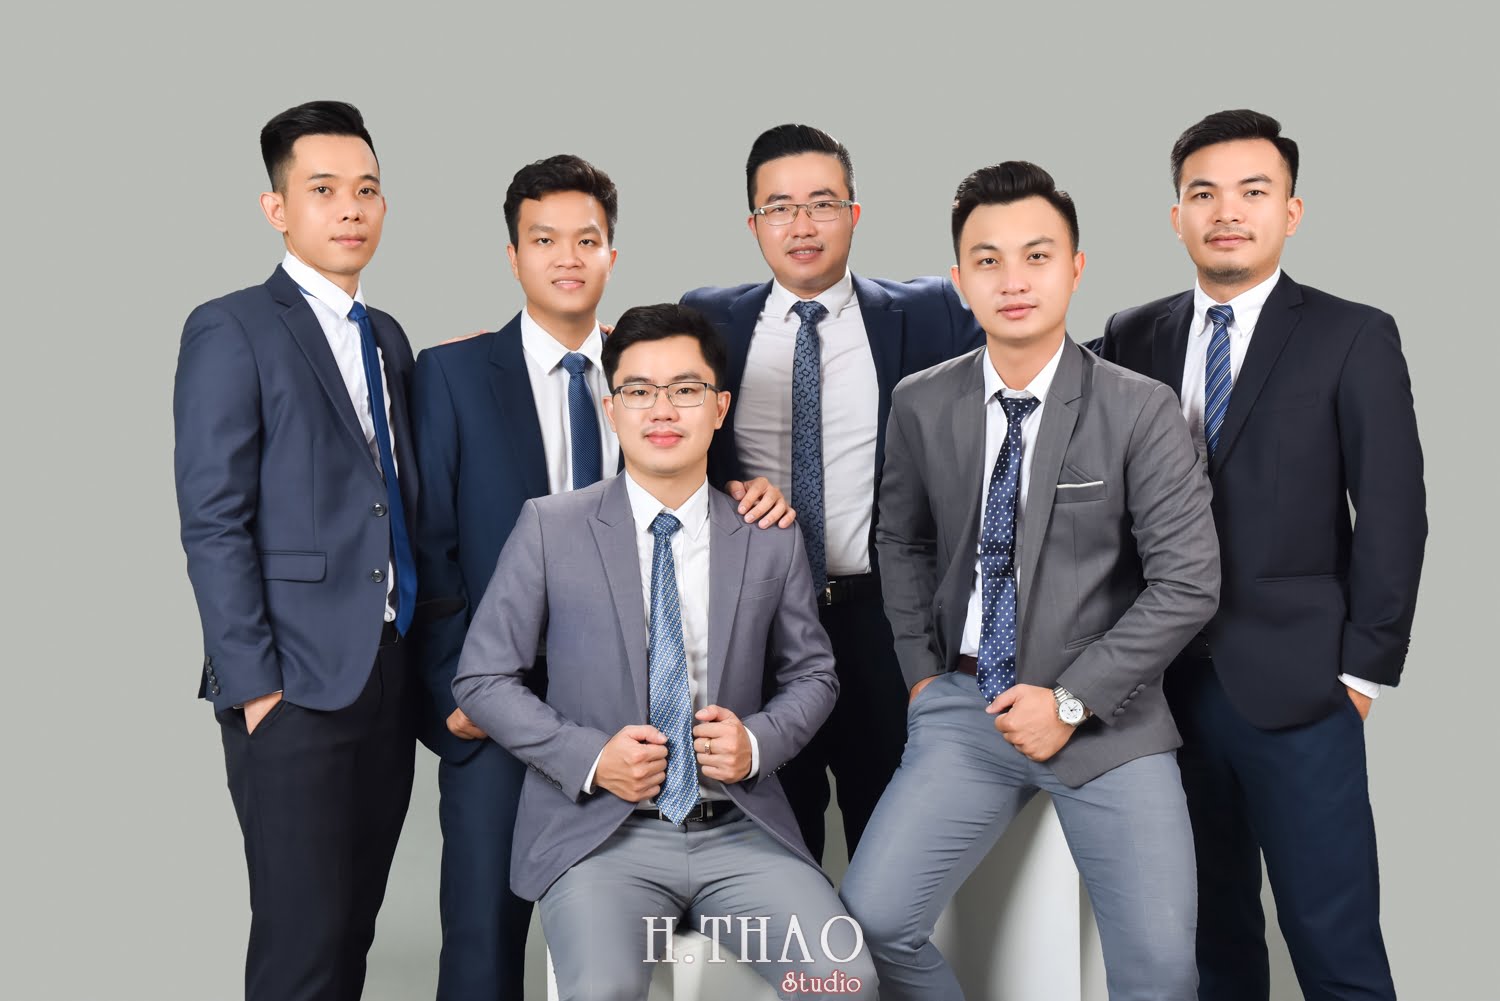 Anh profile cong ty 11 - #3 concept chụp ảnh công ty chuyên nghiệp nhất hiện nay – HThao Studio